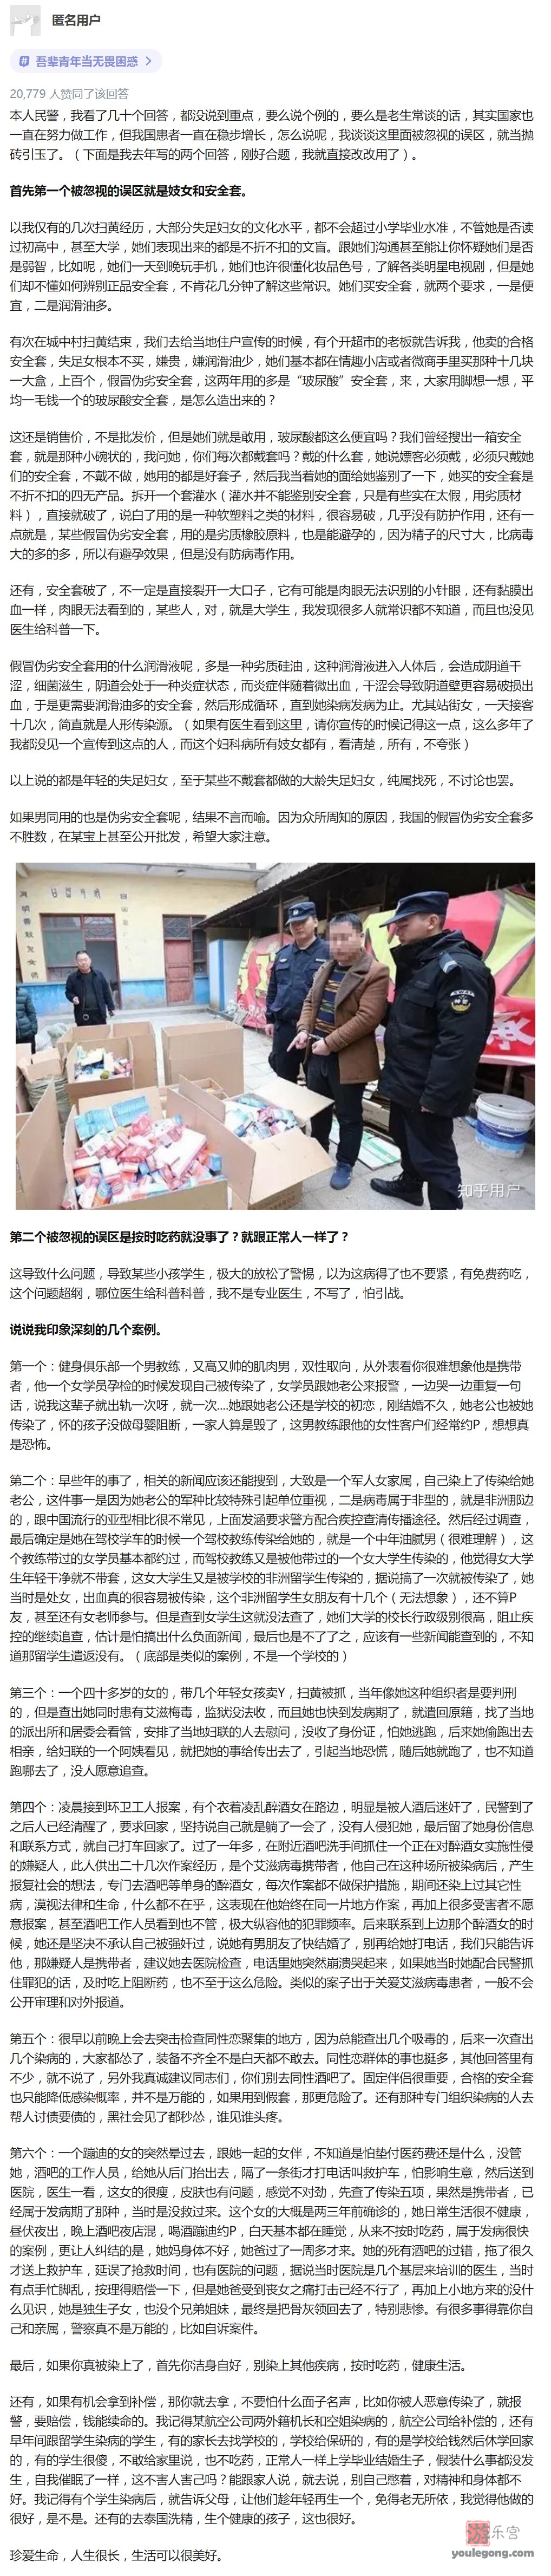 办案民JING谈为什么中国的艾滋病患者这么多，真实案例让人大跌眼镜-知乎-『游乐宫』Youlegong.com